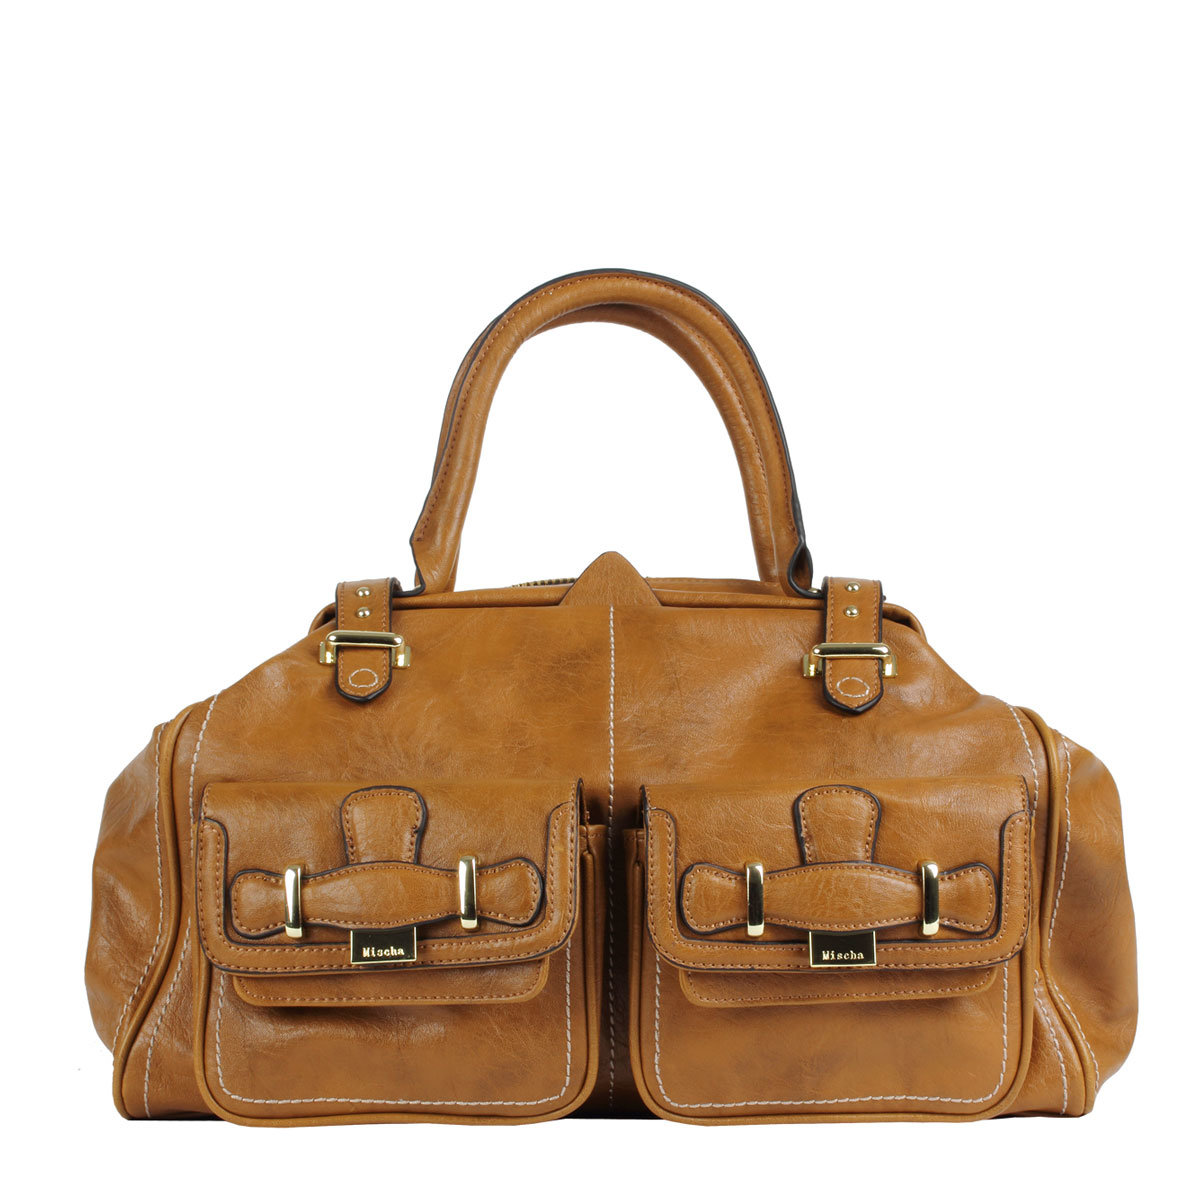 2013 Latest Fashion Tote Handbag (BLS2979)